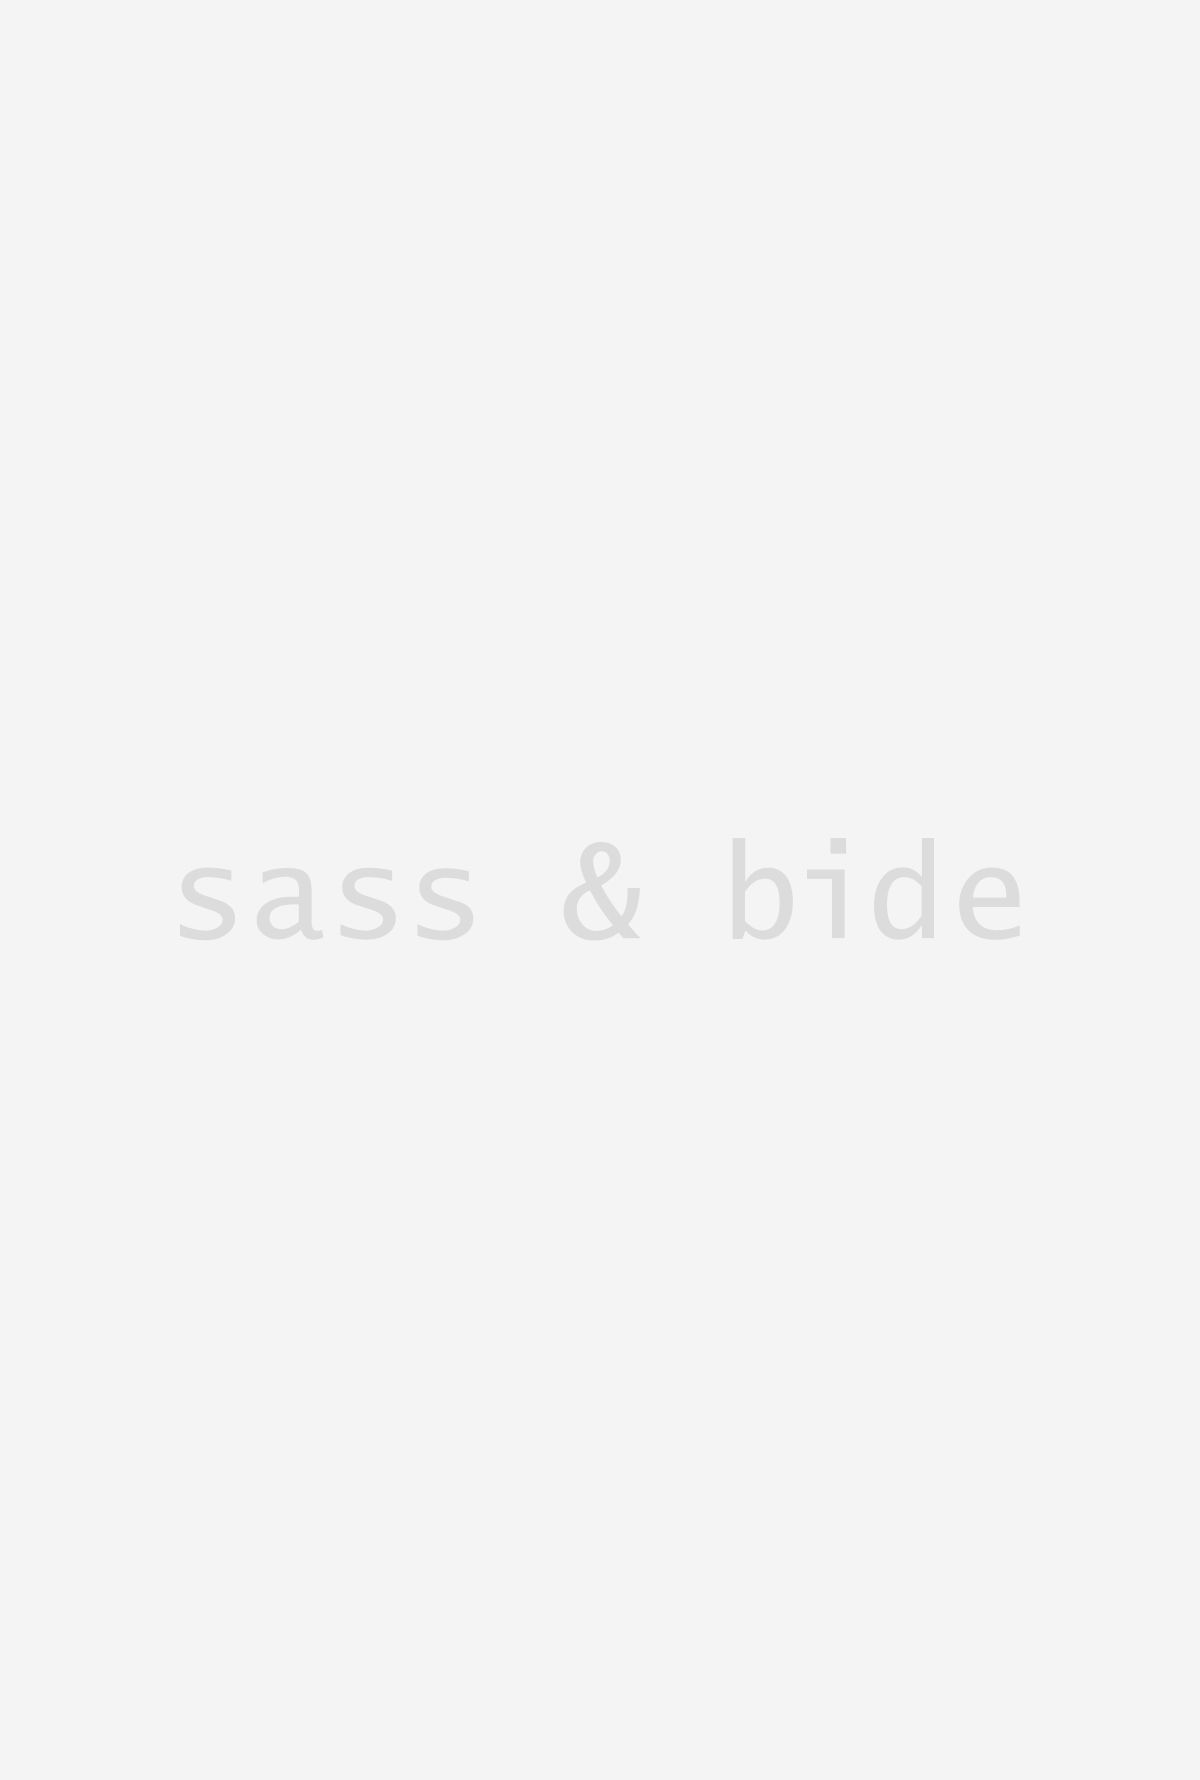  | Sass & Bide (AU, UK, US)